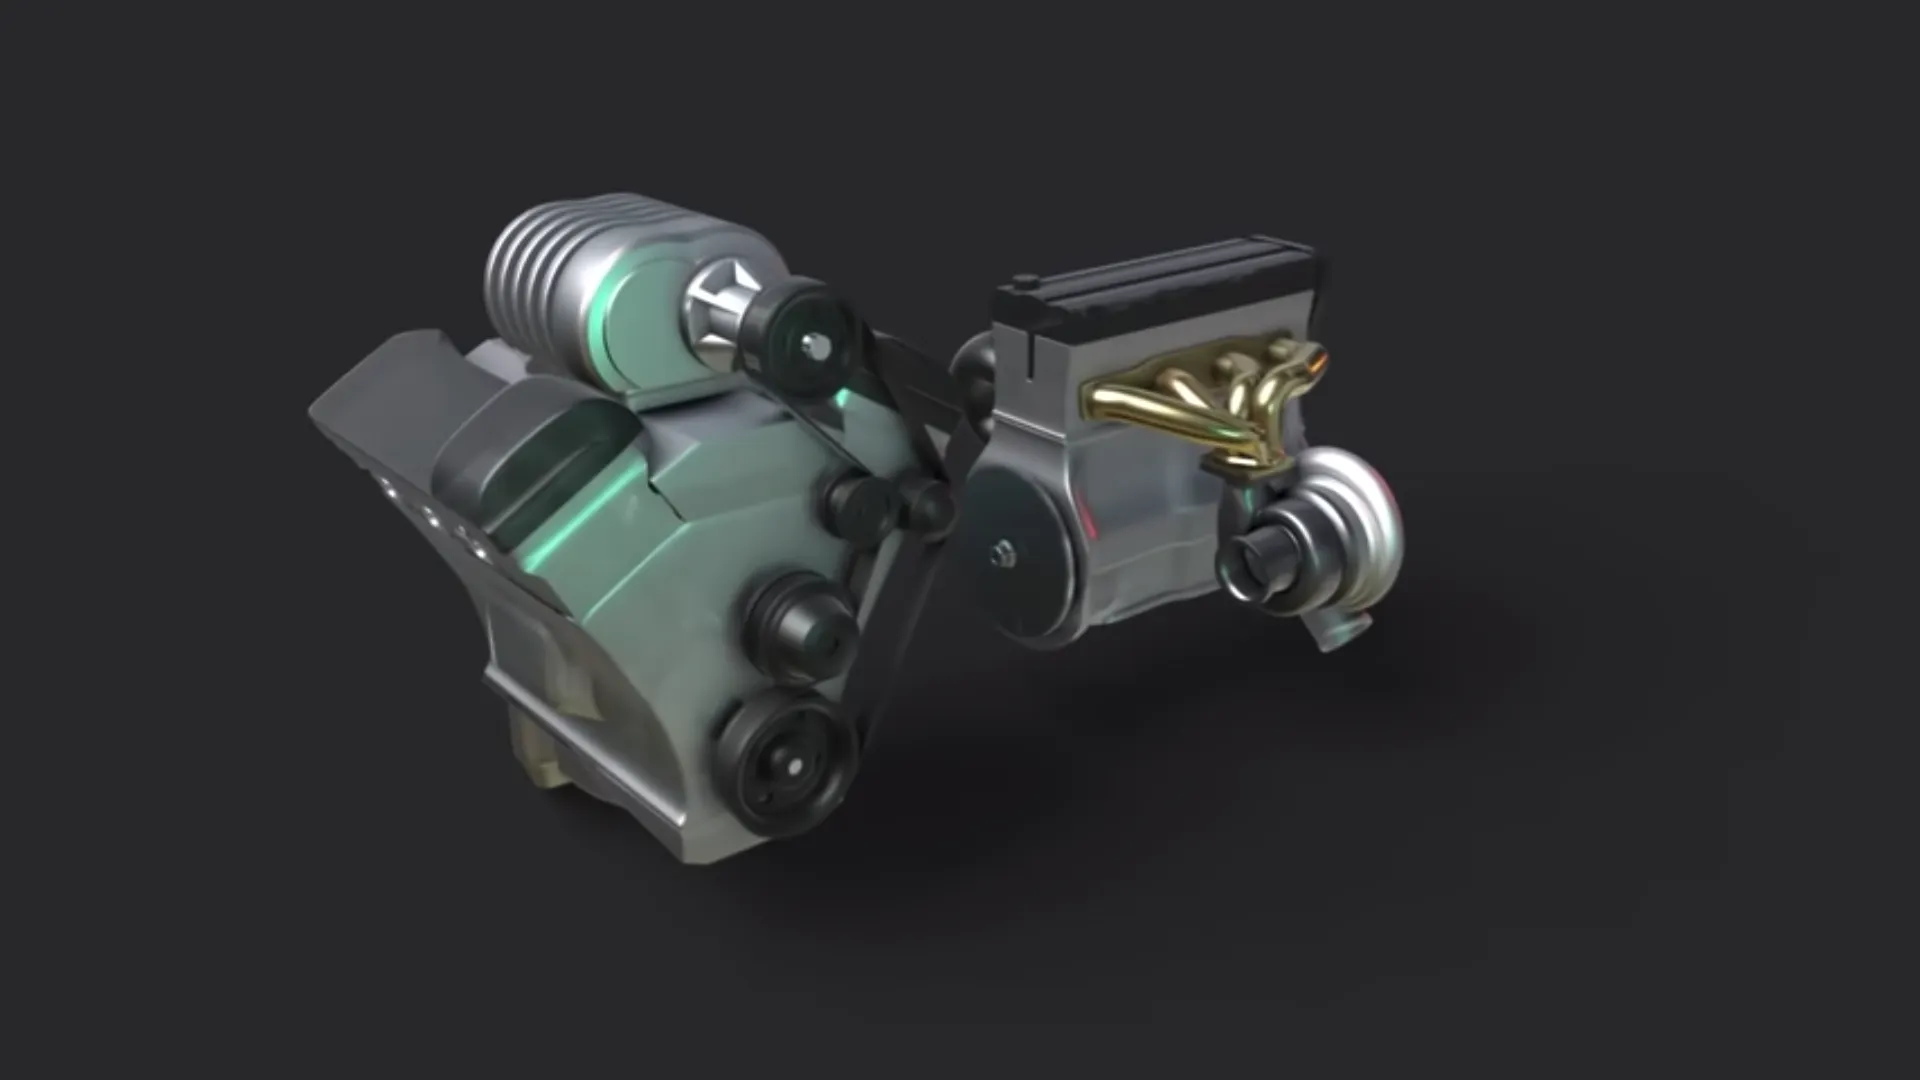 Este vídeo aclara las diferencias básicas de funcionamiento entre compresor y turbocompresor